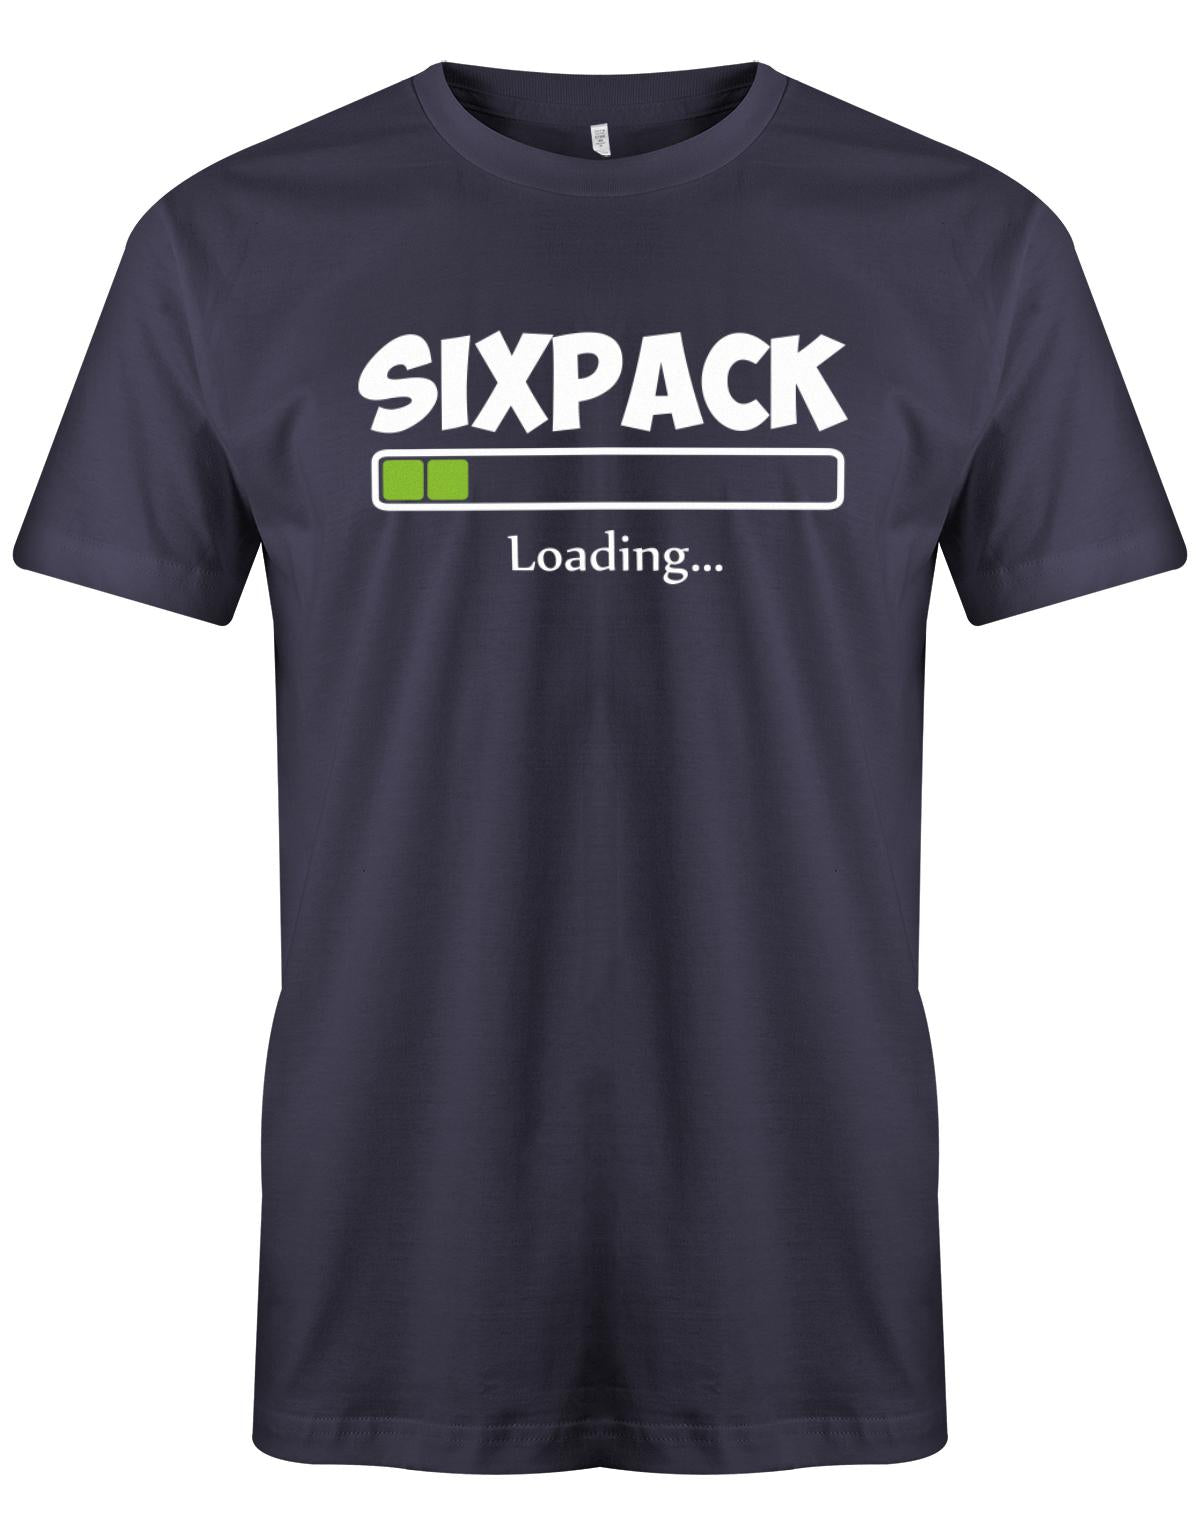 Sixpack-loading-Herren-Shirt-Navy